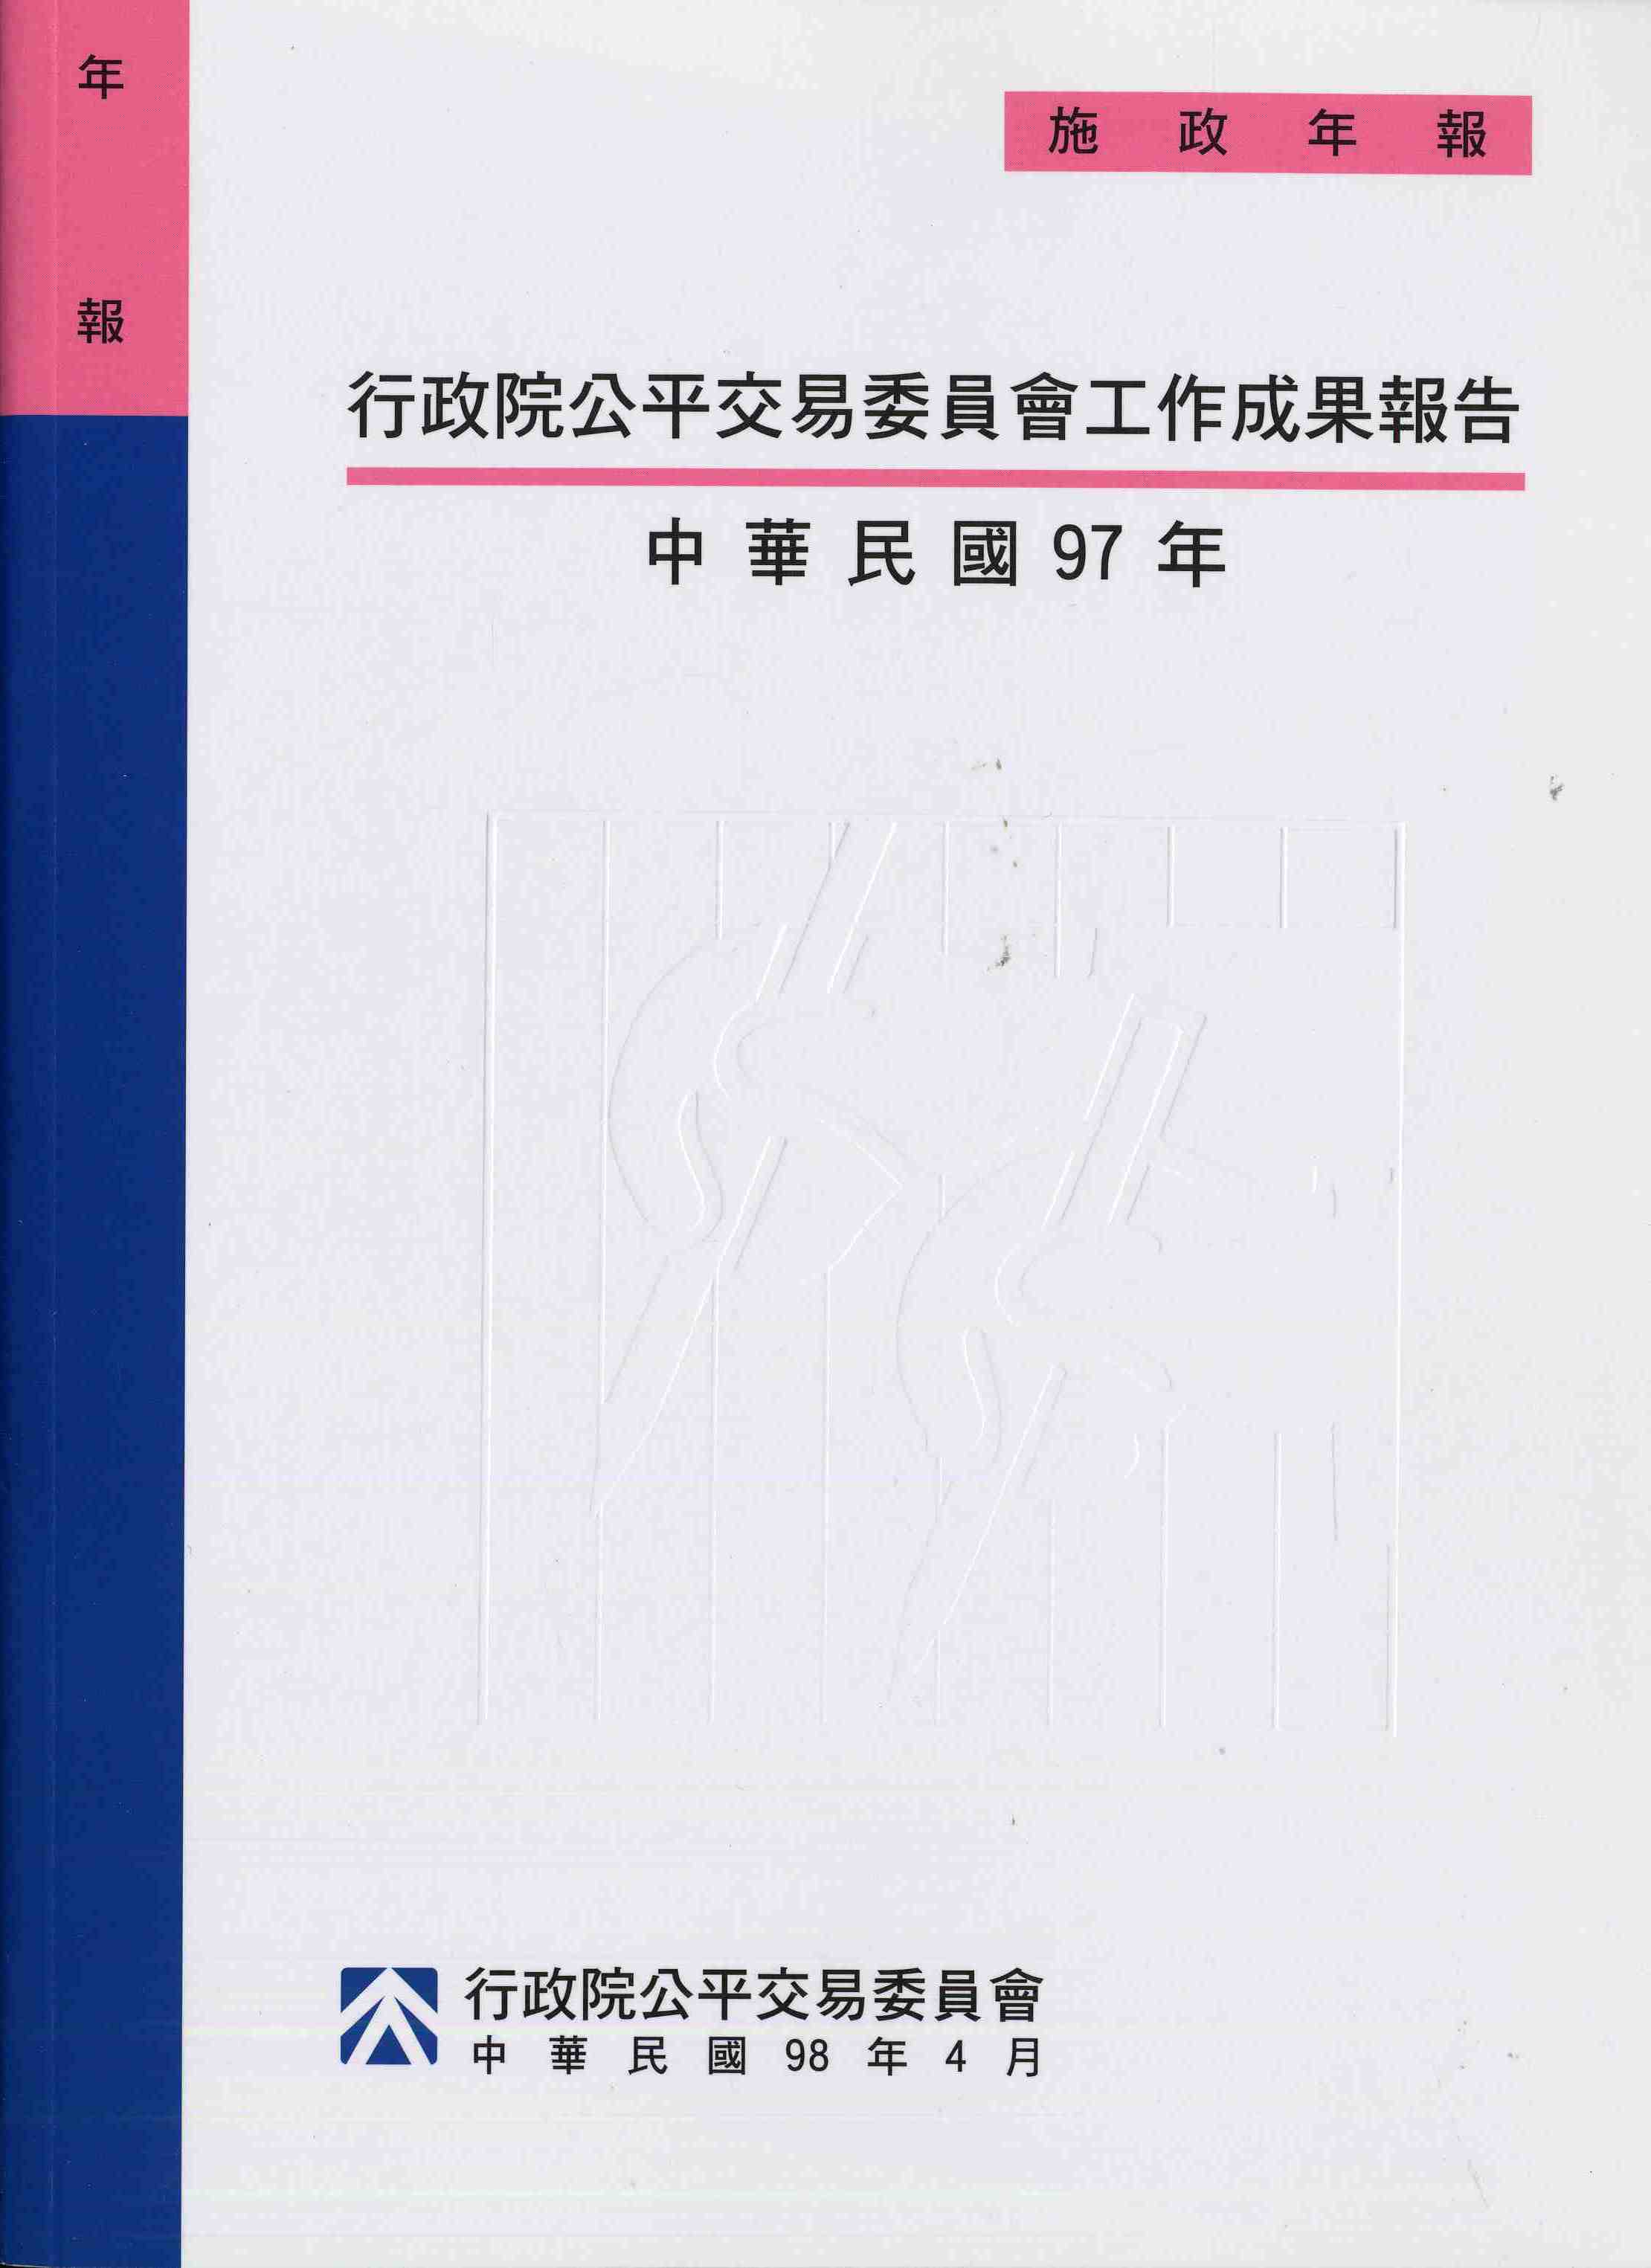 行政院公平交易委員會工作成果報告-中華民國97年